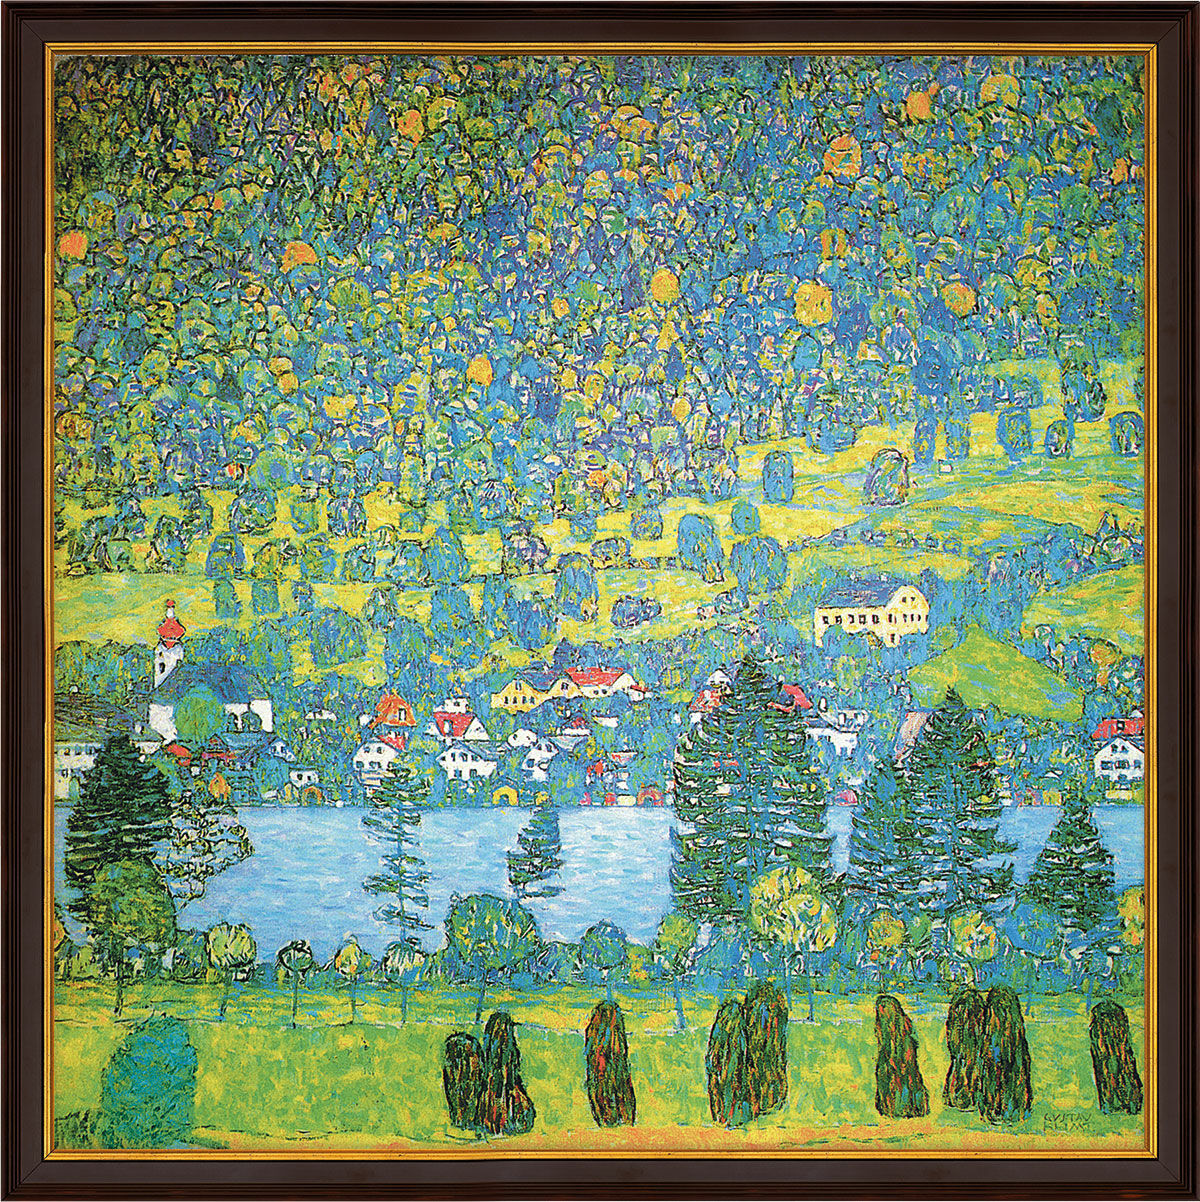 Tableau "Pente forestière à Unterach sur l'Attersee" (1917), encadré von Gustav Klimt